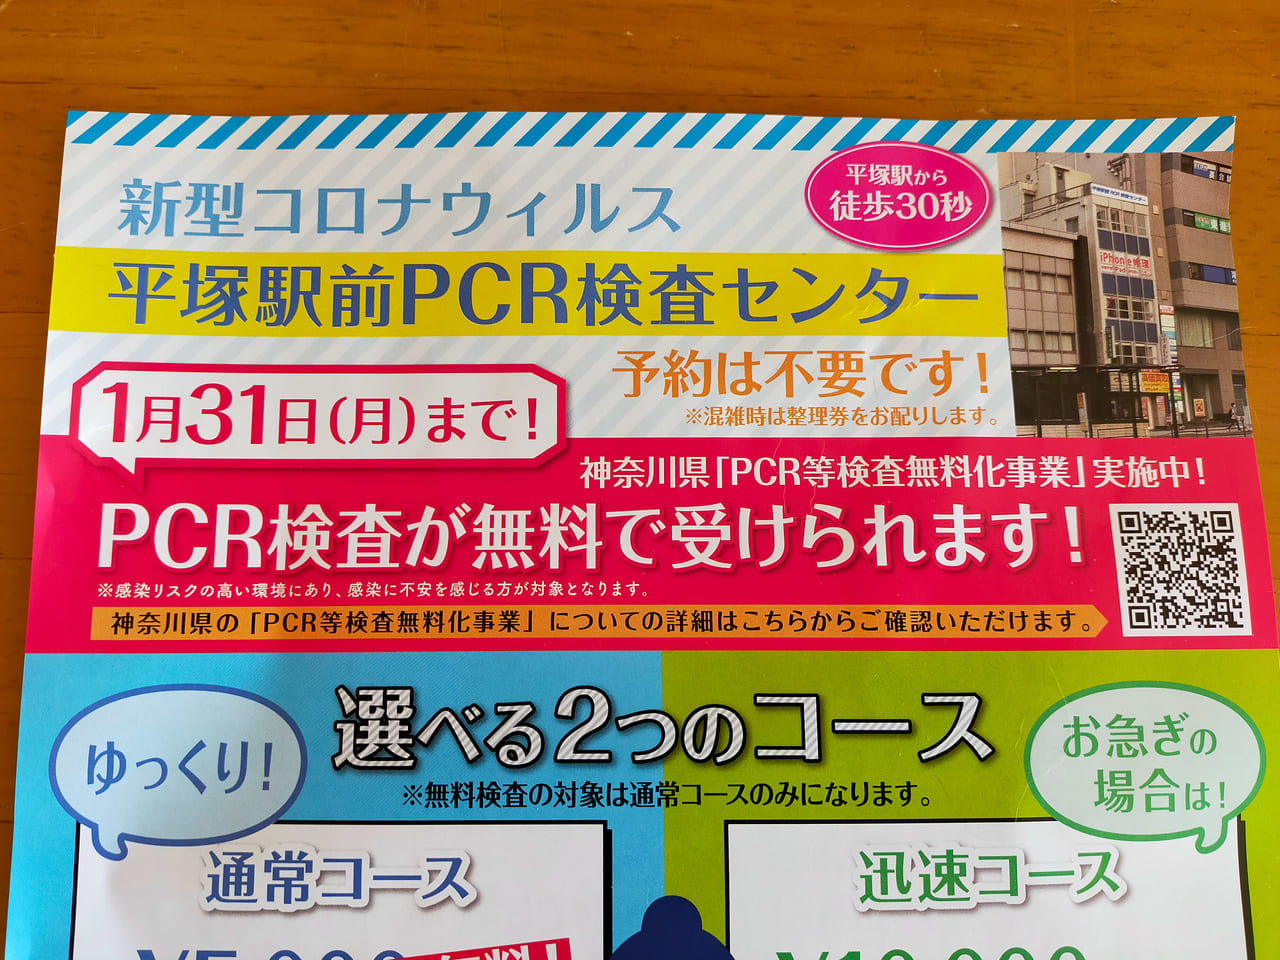 「平塚駅前PCR検査センター」で1月31日（月）までPCR検査が無料受けられます。